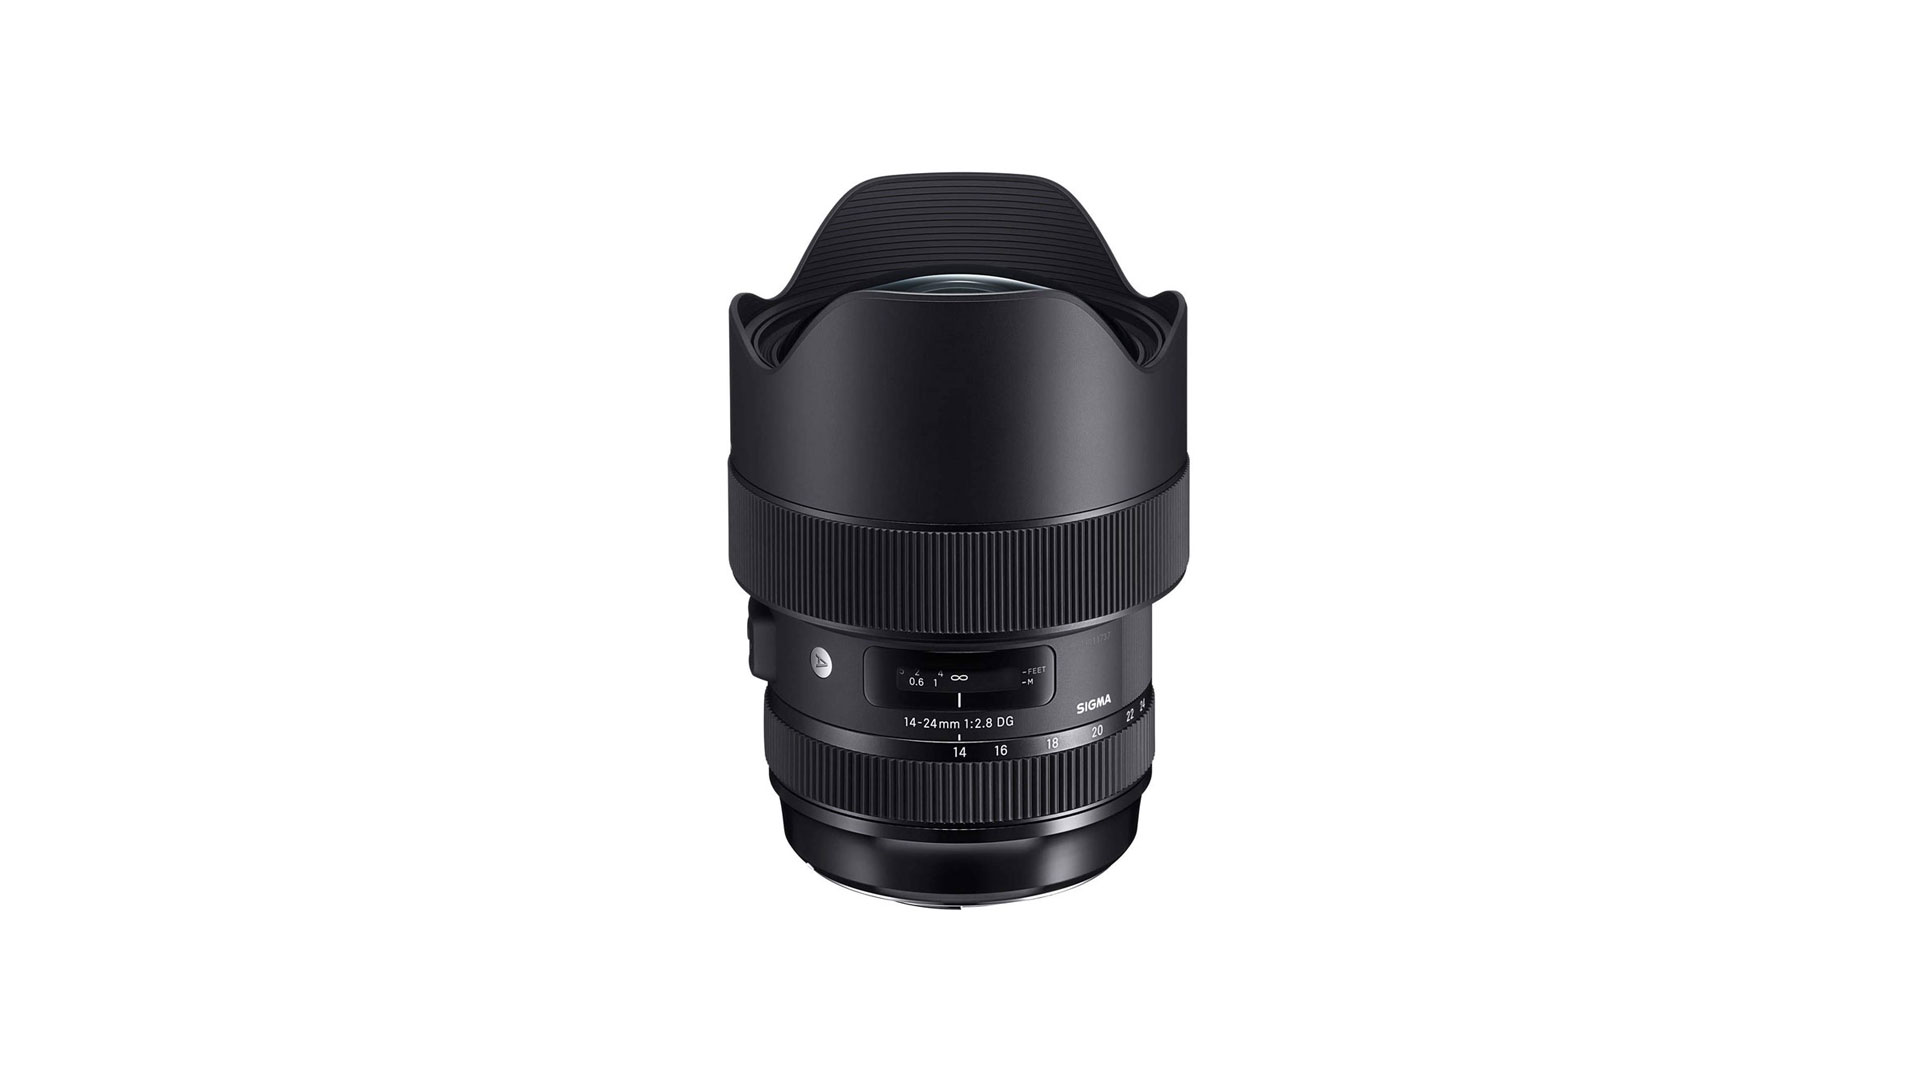 Sigma 14-24mm F2.8 DG HSM ART lens review | Space